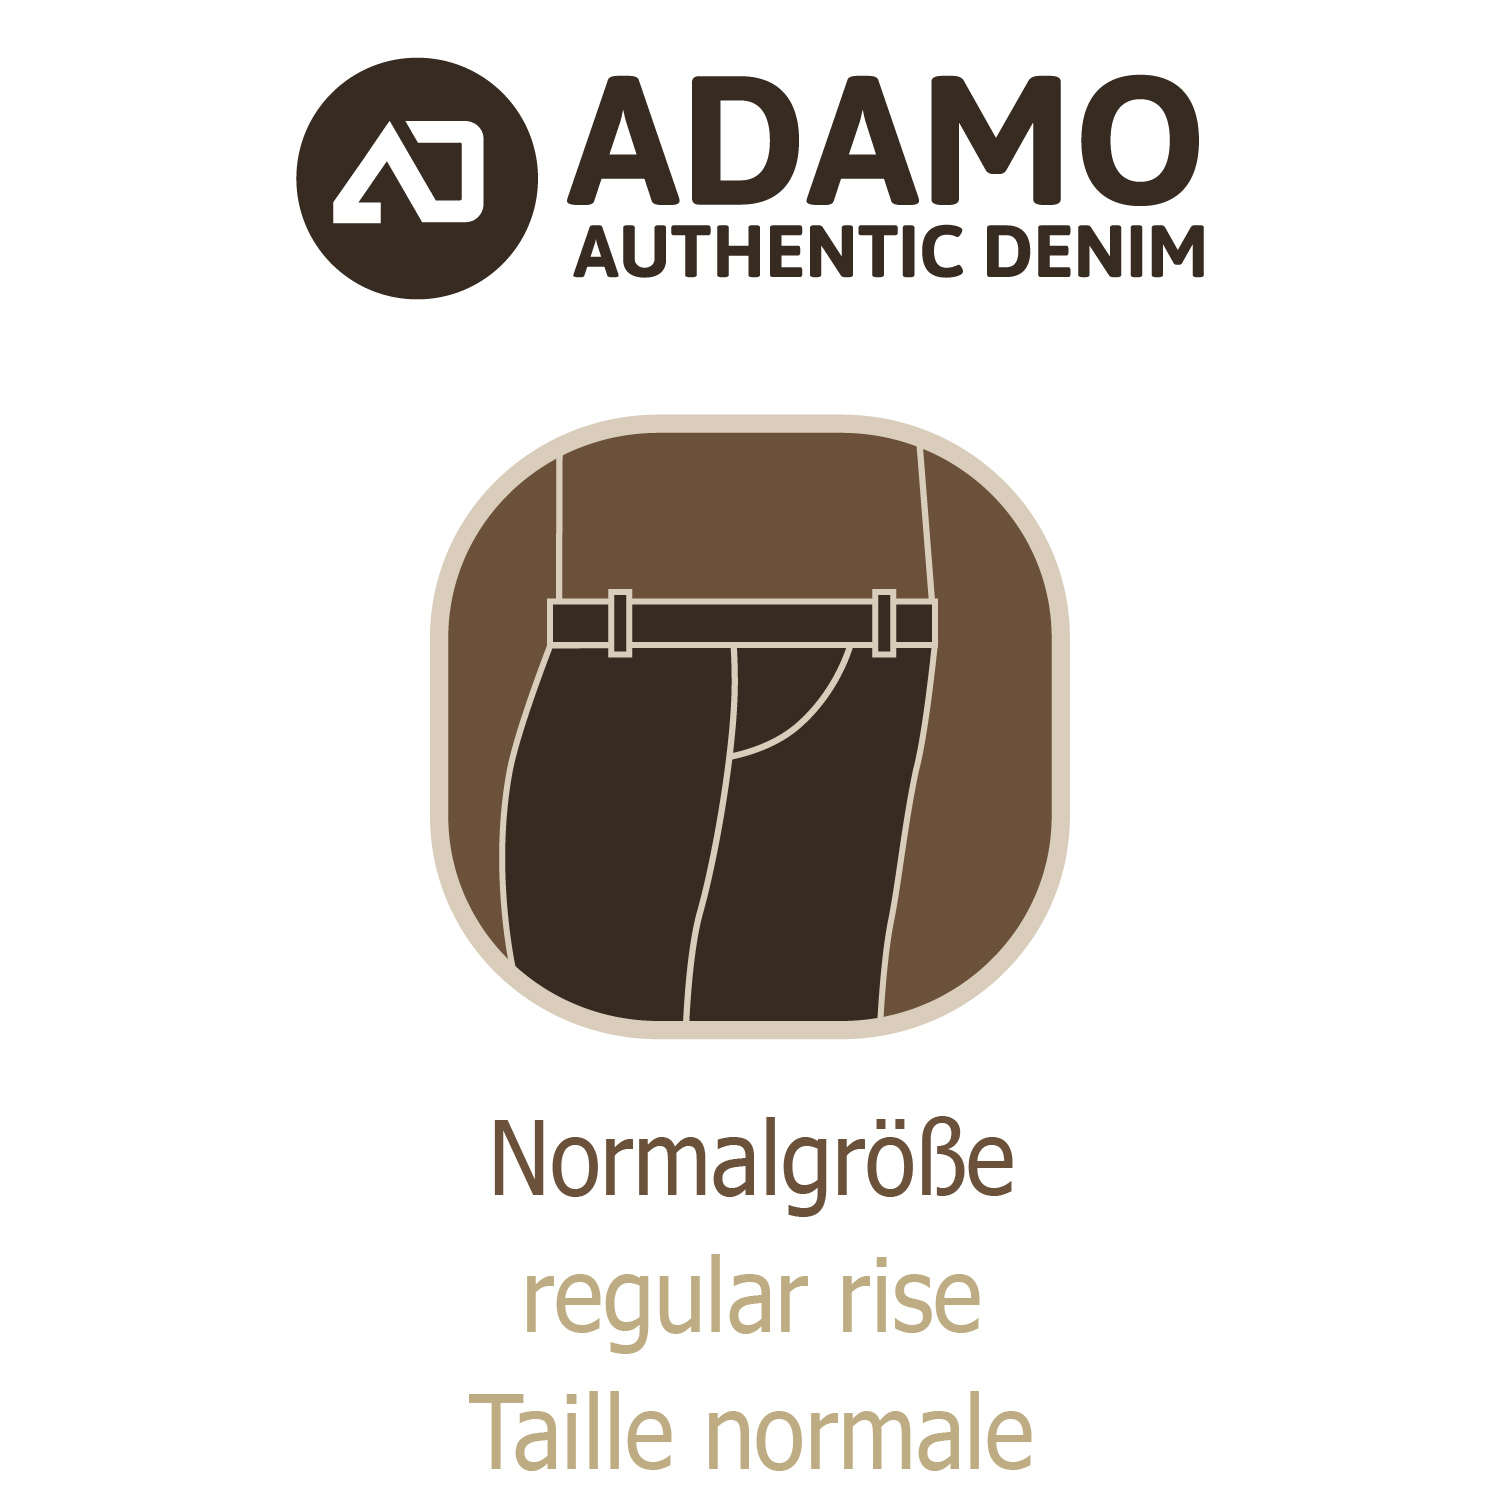 ADAMO 5-Pocket Jeans lang mit Stretch in mittelblau für Herren Serie "NEVADA" in Übergrößen 56 - 80